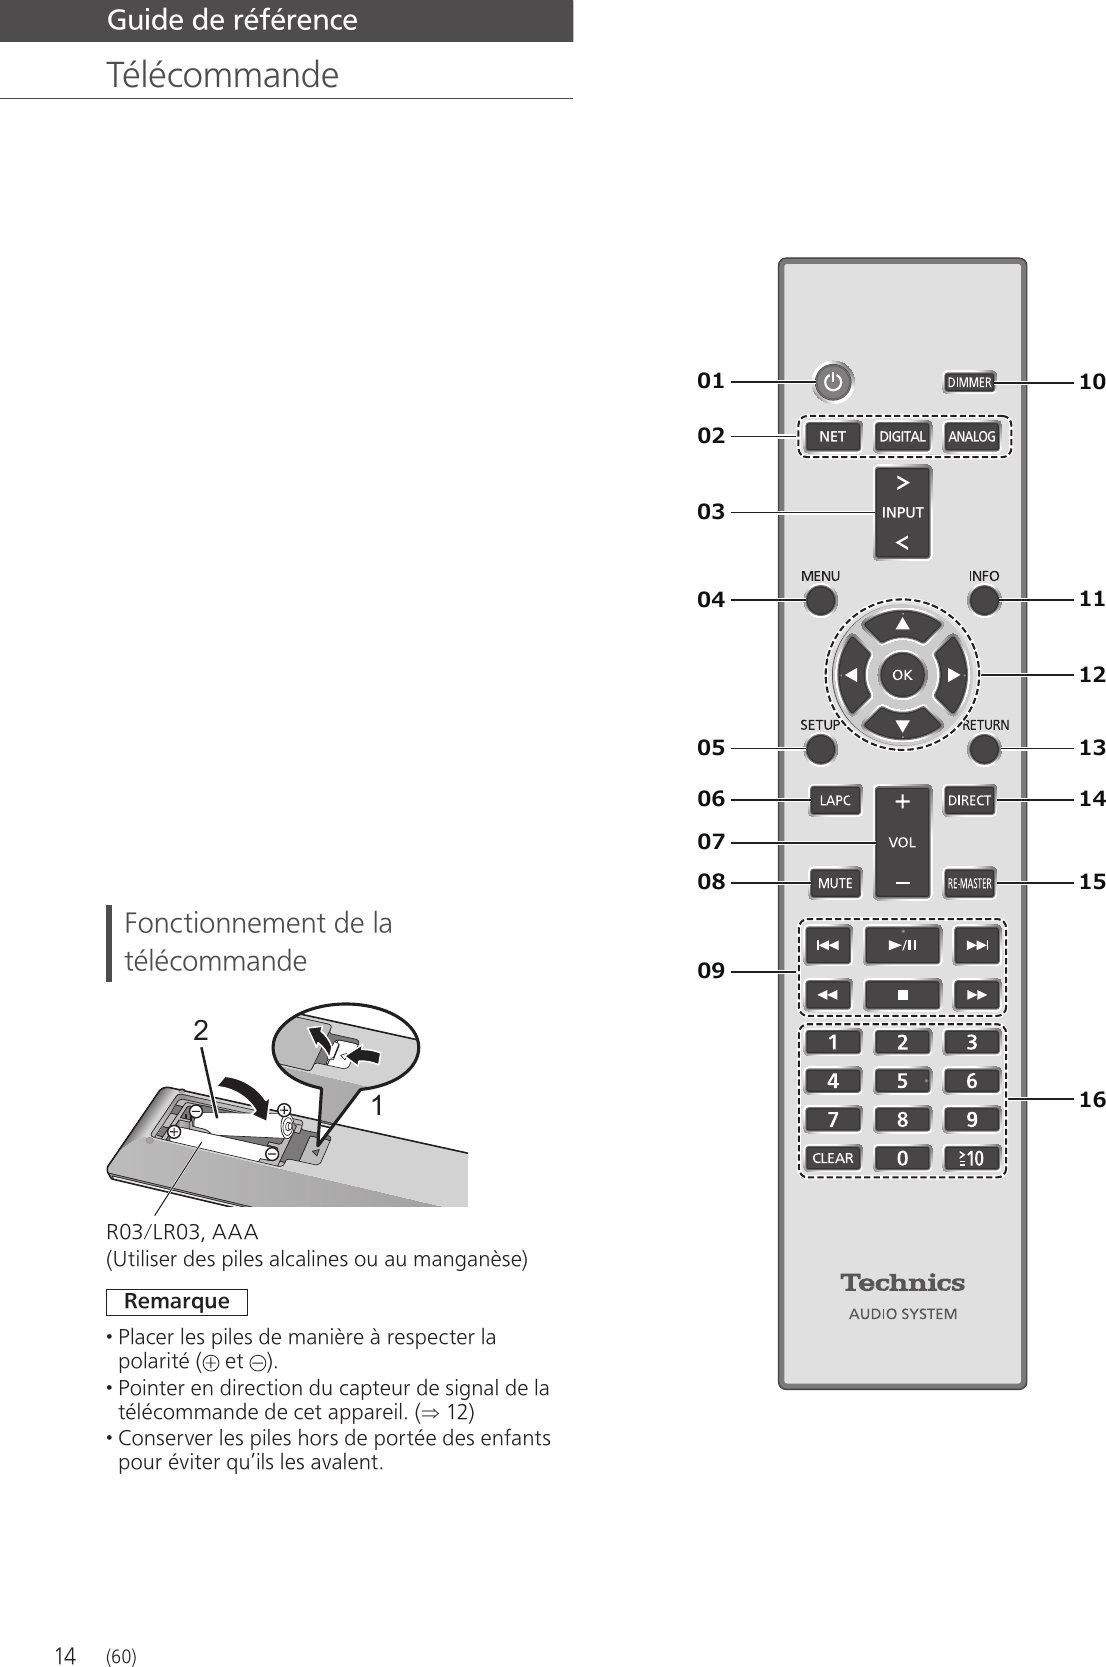 14  Guide de référence   TélécommandeNETDIGITALINPUTANALOG   Fonctionnement de la télécommande 21 R03/LR03, AAA (Utiliser des piles alcalines ou au manganèse) Remarque • Placer les piles de manière à respecter la polarité (  et  ). • Pointer en direction du capteur de signal de la télécommande de cet appareil. ( 12) • Conserver les piles hors de portée des enfants pour éviter qu’ils les avalent. (60)